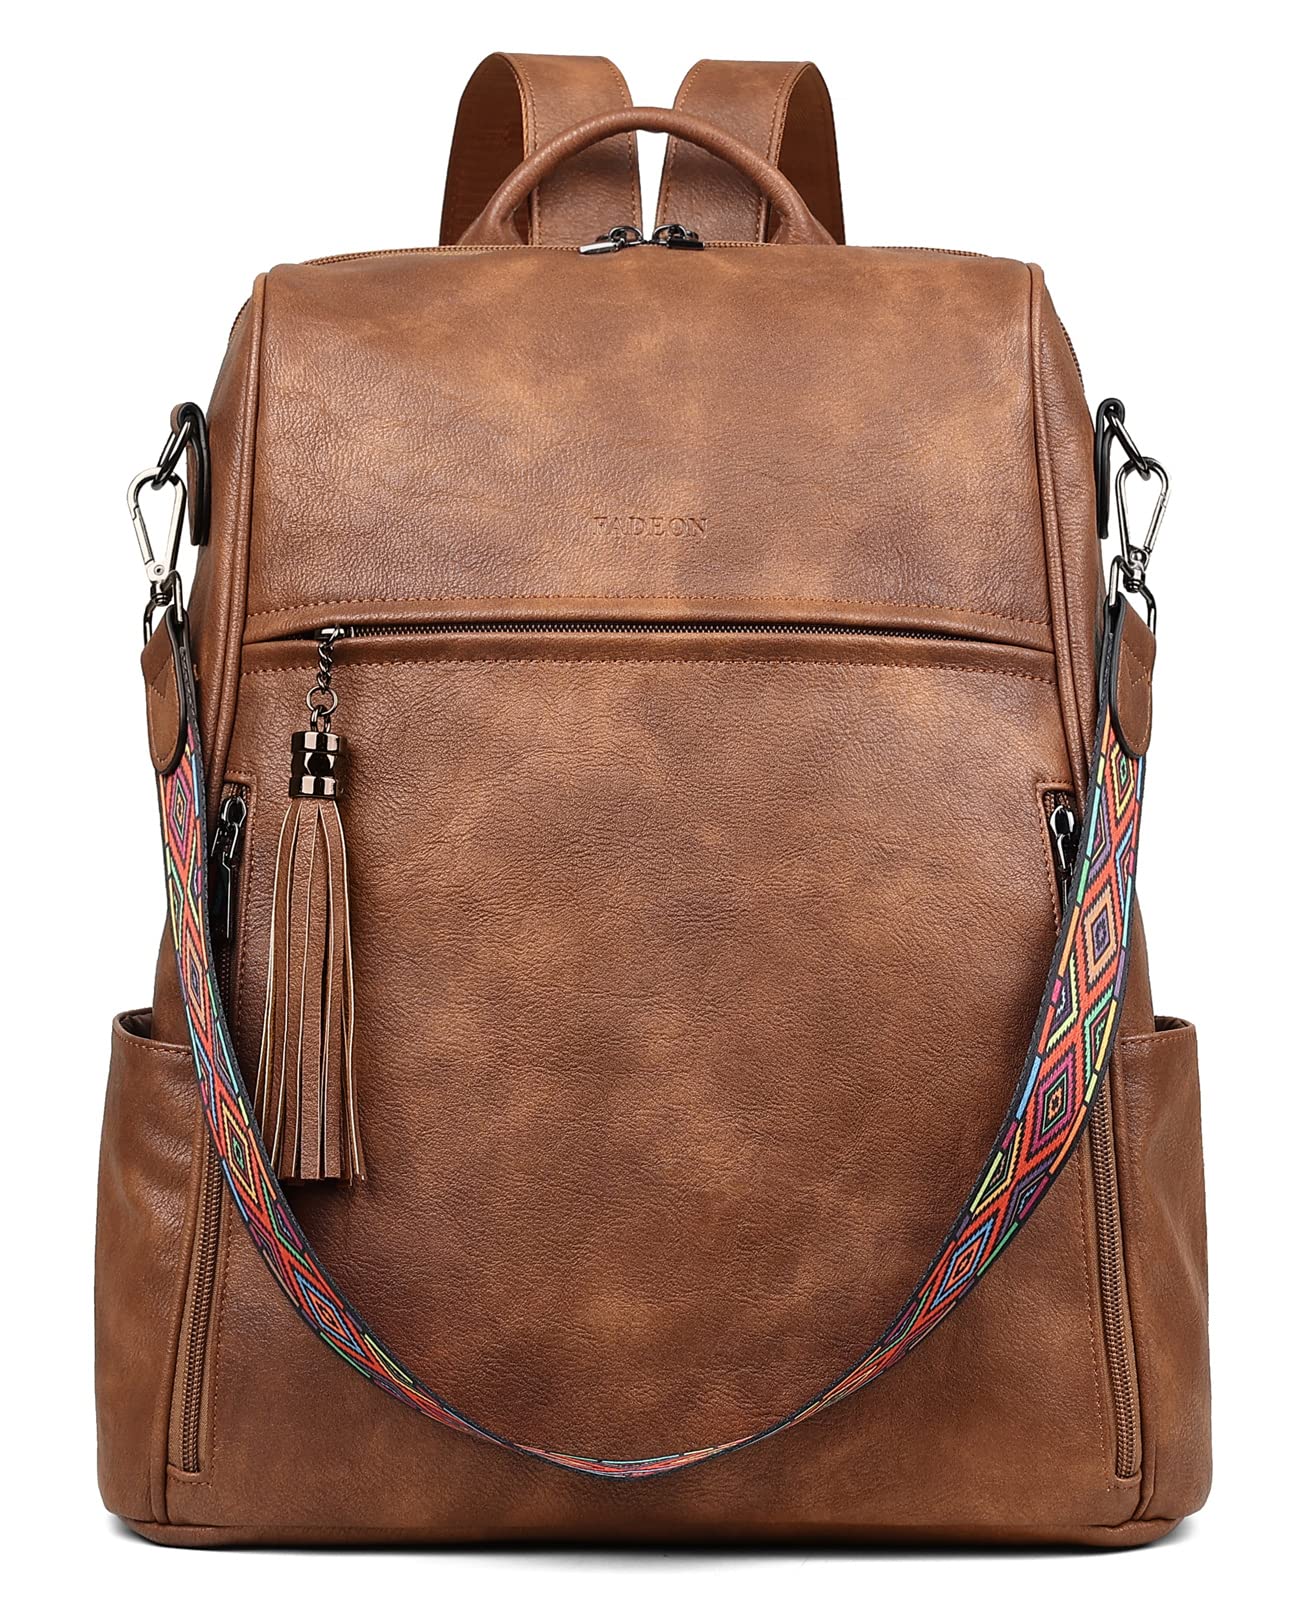 送料無料FADEON Laptop Backpack Purse for Women Large Designer PU Leather Laptop Bag Ladies Computer Shoulder Bags並行